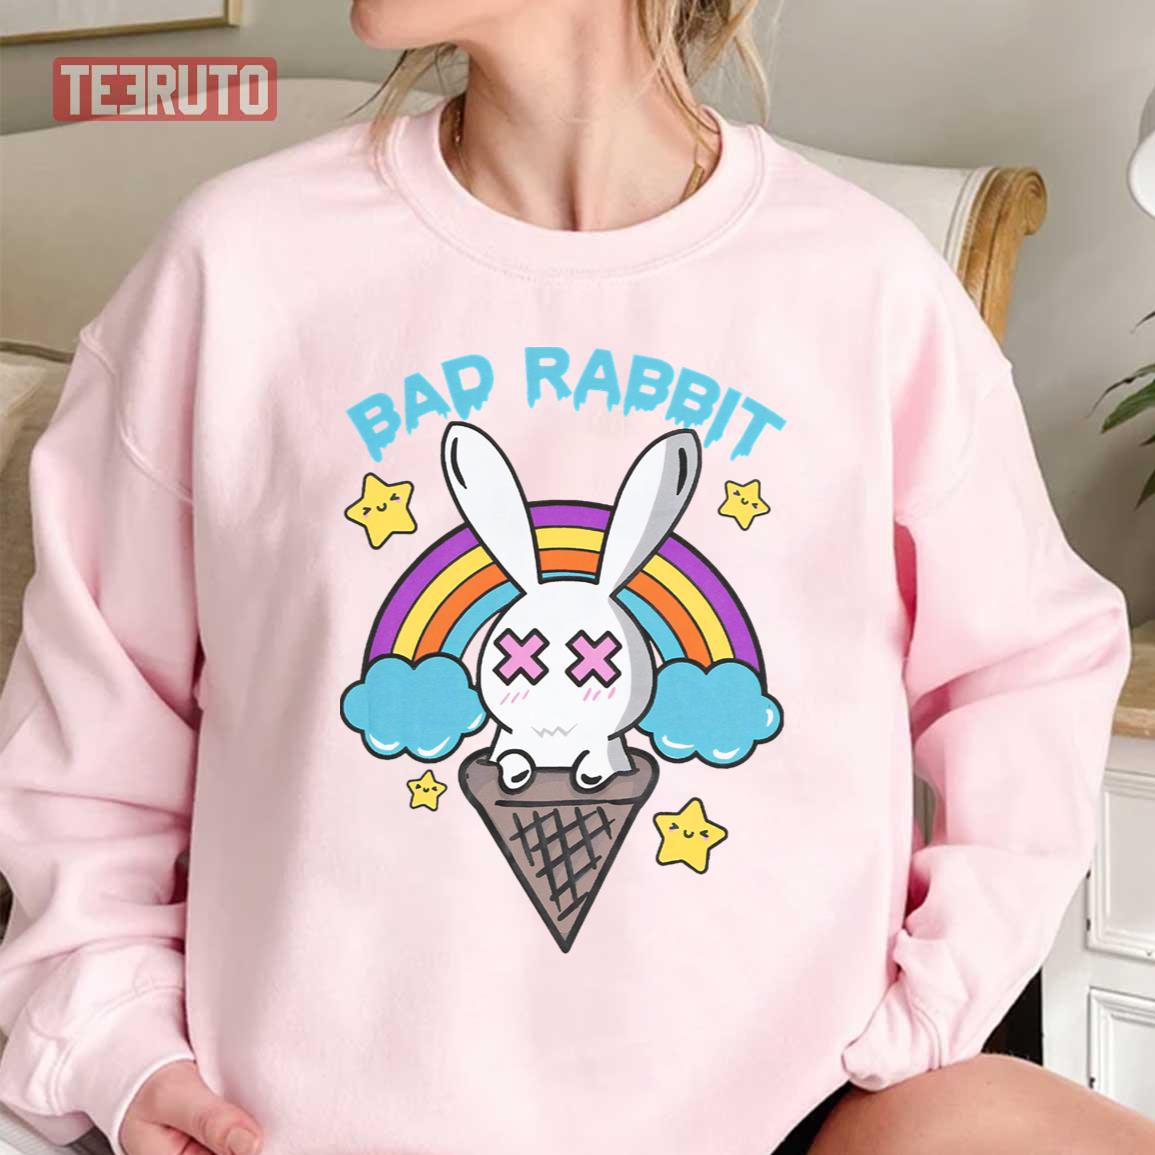 Bad Rabbit Candy Land Unisex T-Shirt